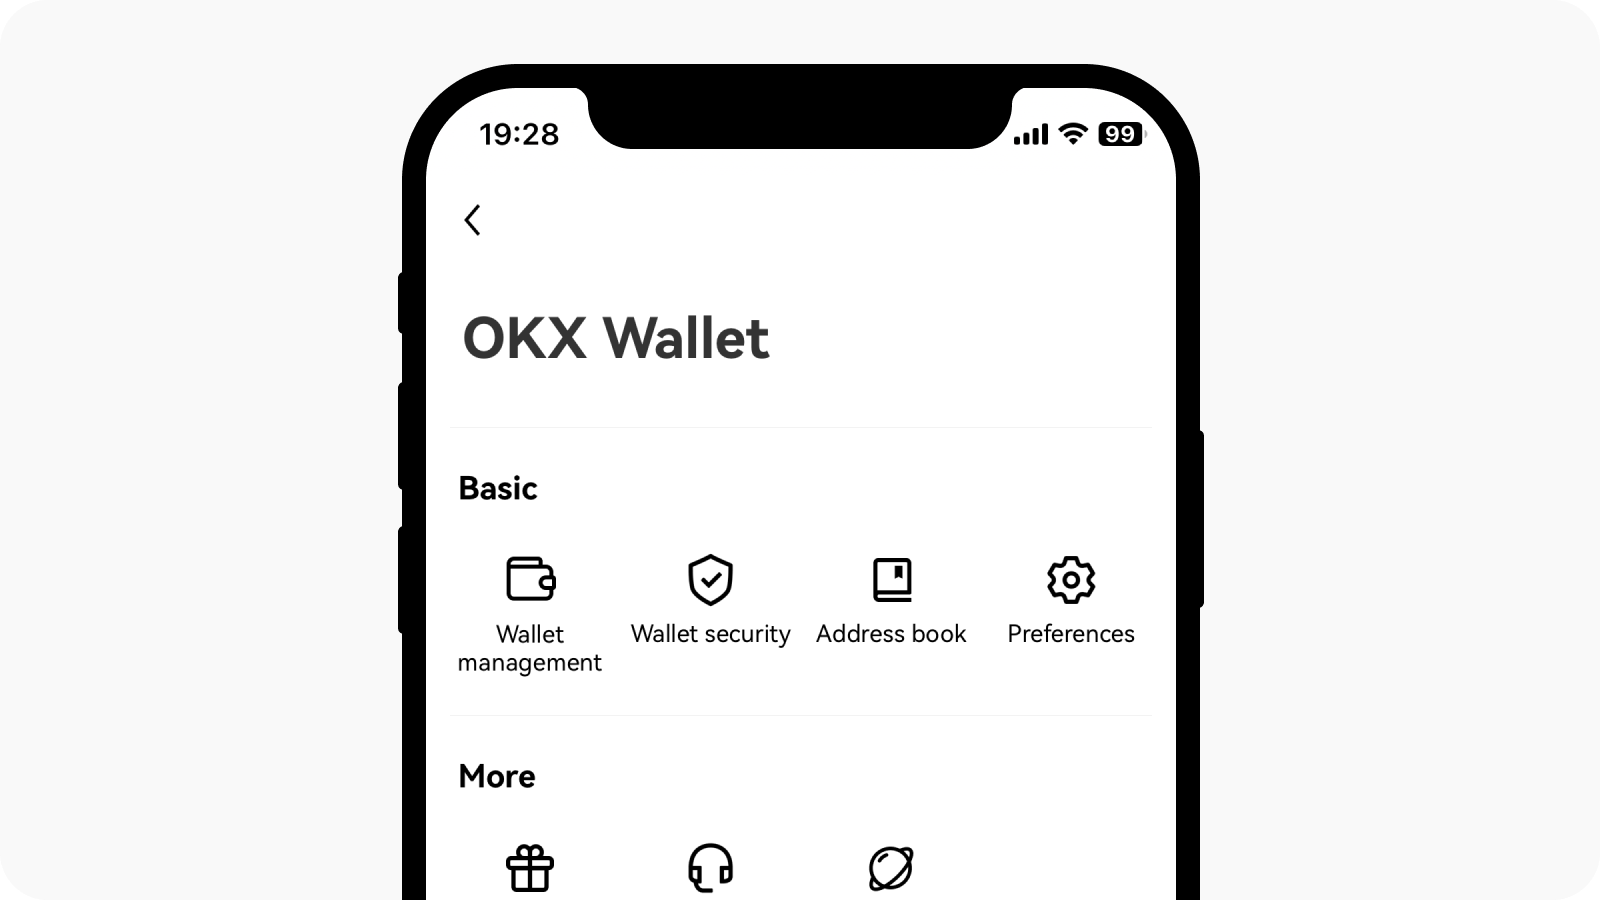 Wybierz centrum użytkownika w lewym górnym rogu i znajdź zarządzanie portfelem w portfelu OKX